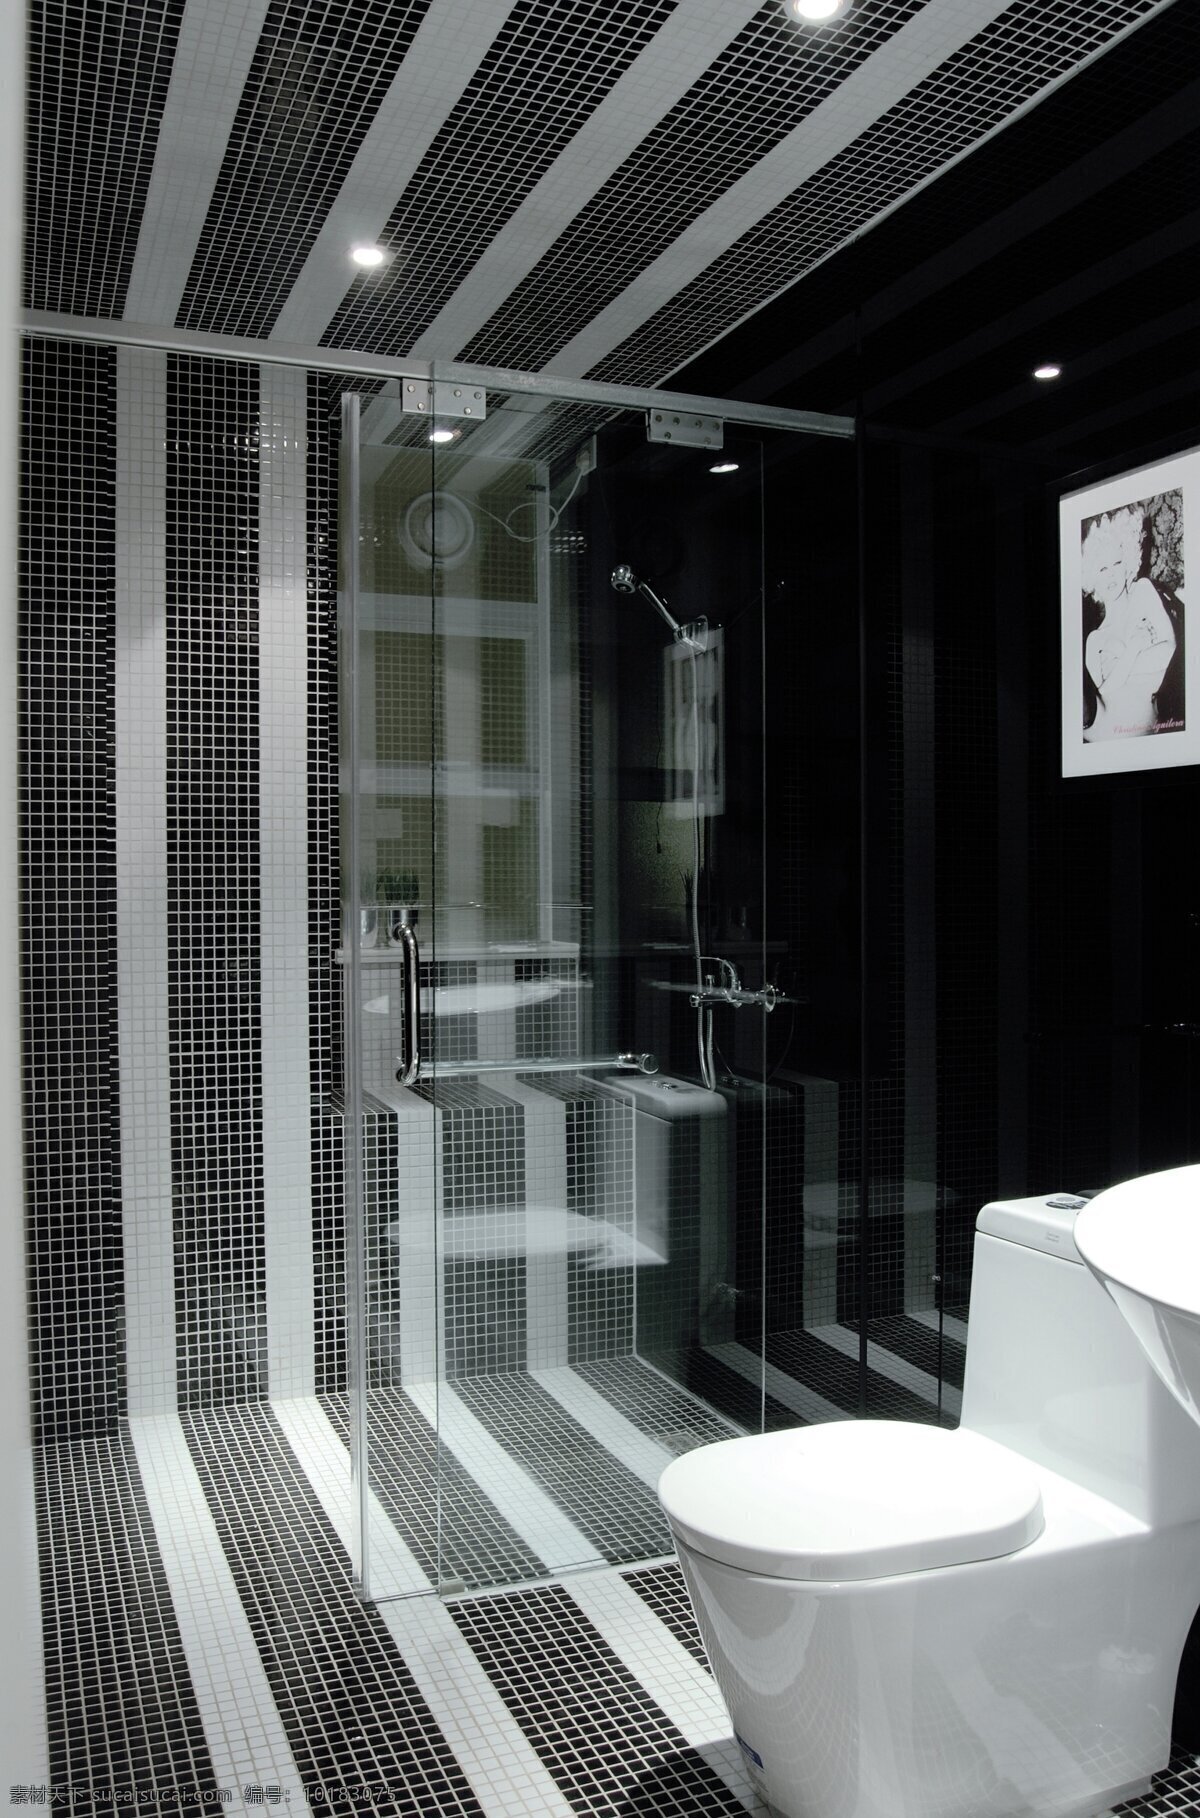 小 户型 欧式 透明 卫生间 马桶 现代 简约 室内设计 效果图 风 家装 家居 家具 装饰画